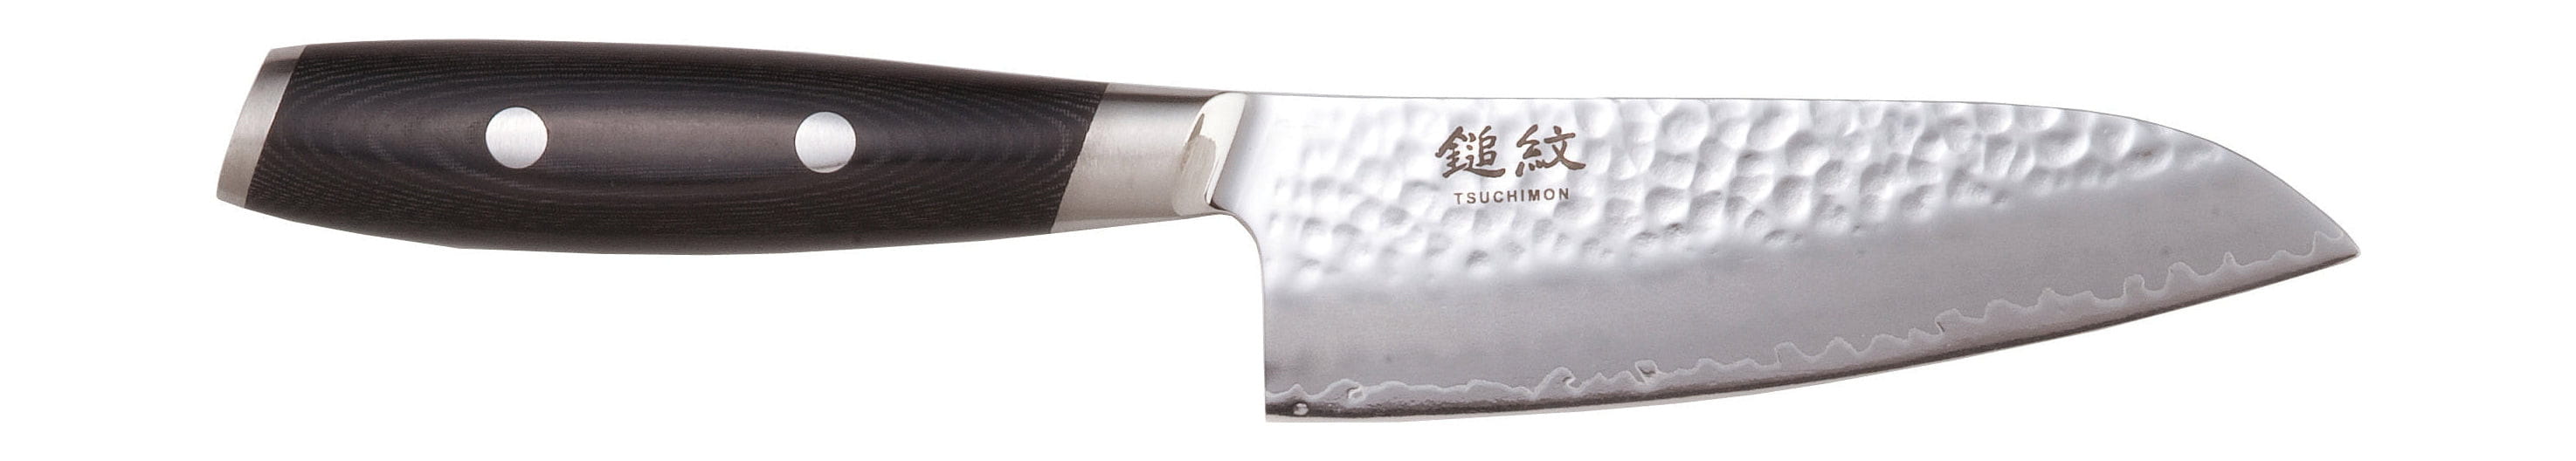 Cuchillo de yaxell tsuchimon santoku, 12,5 cm